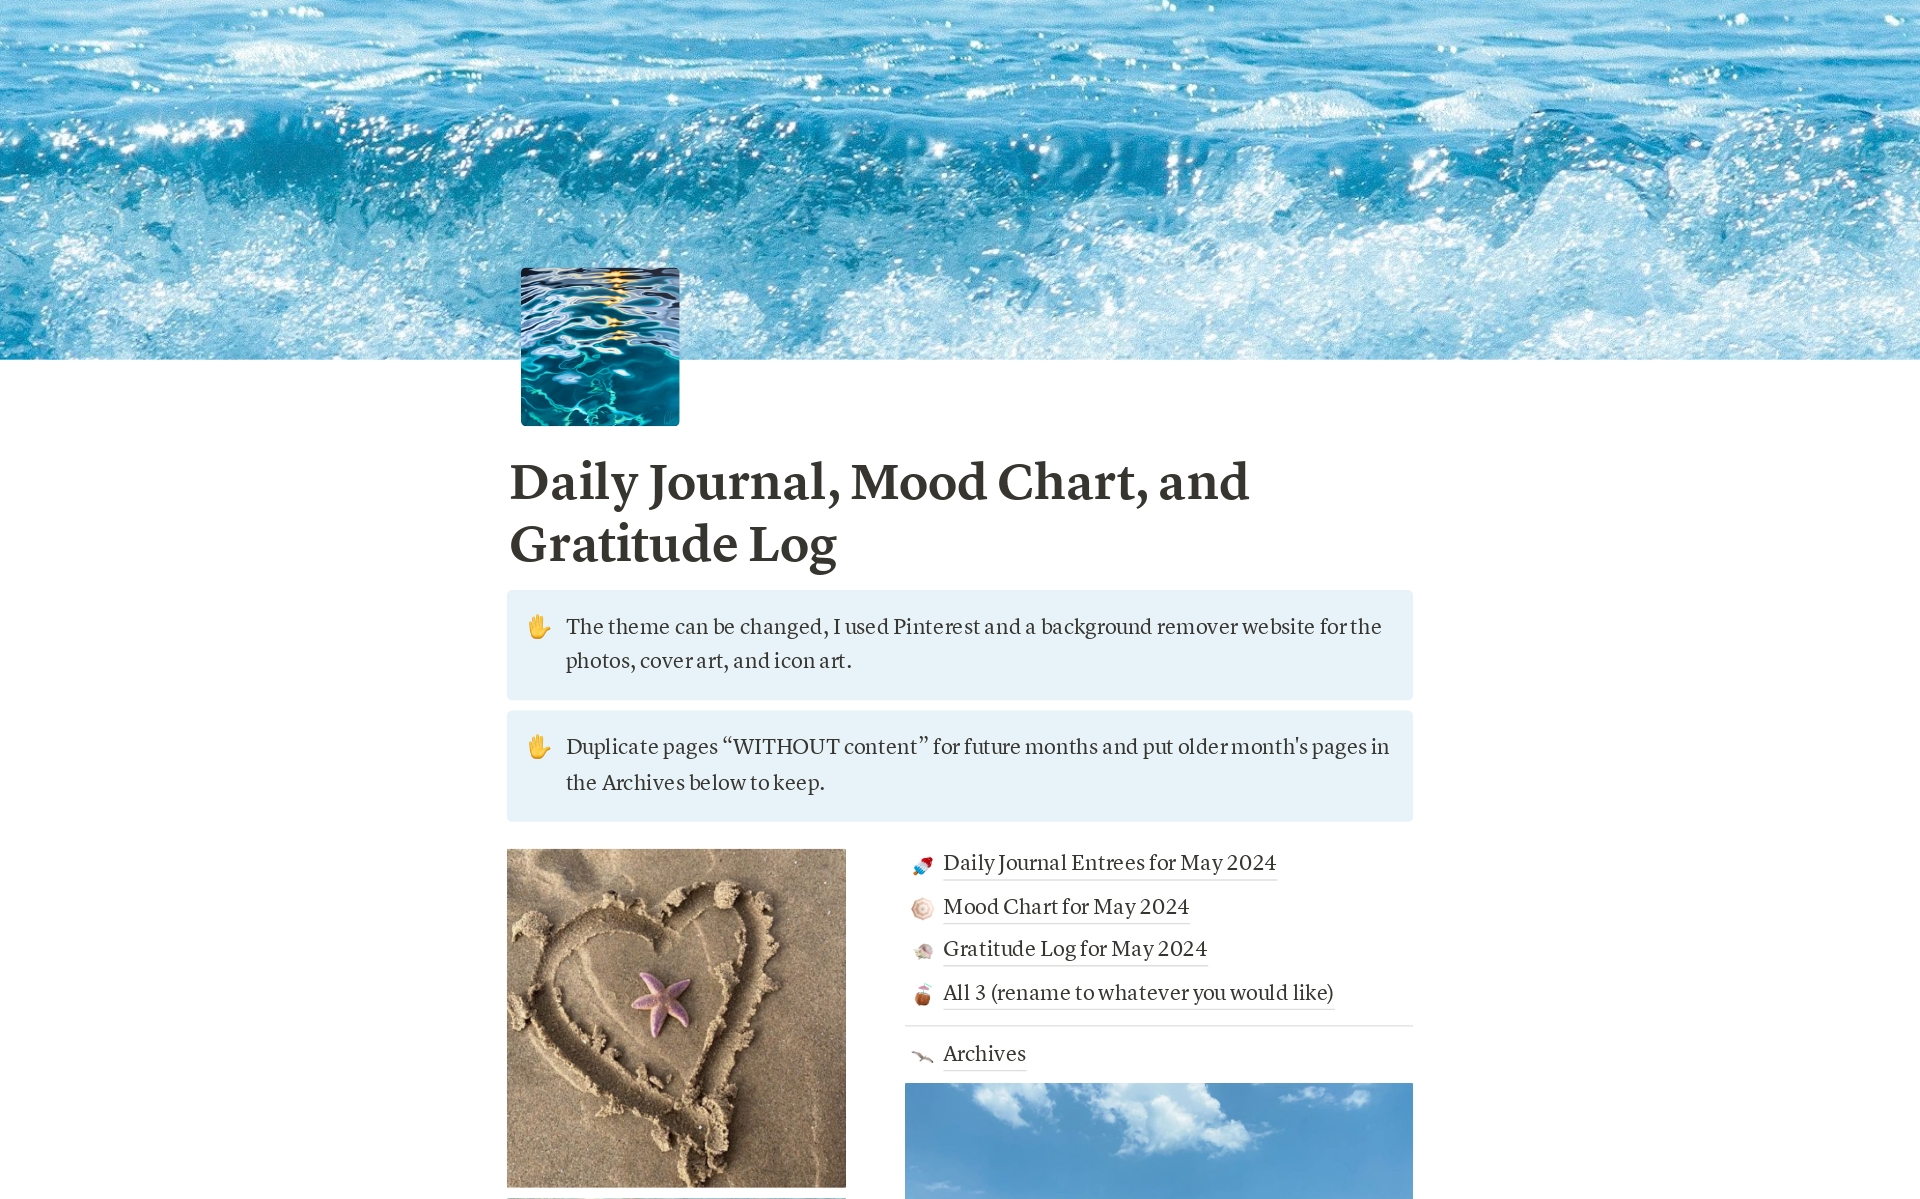 Vista previa de una plantilla para Daily Journal, Mood Chart, and Gratitude Log